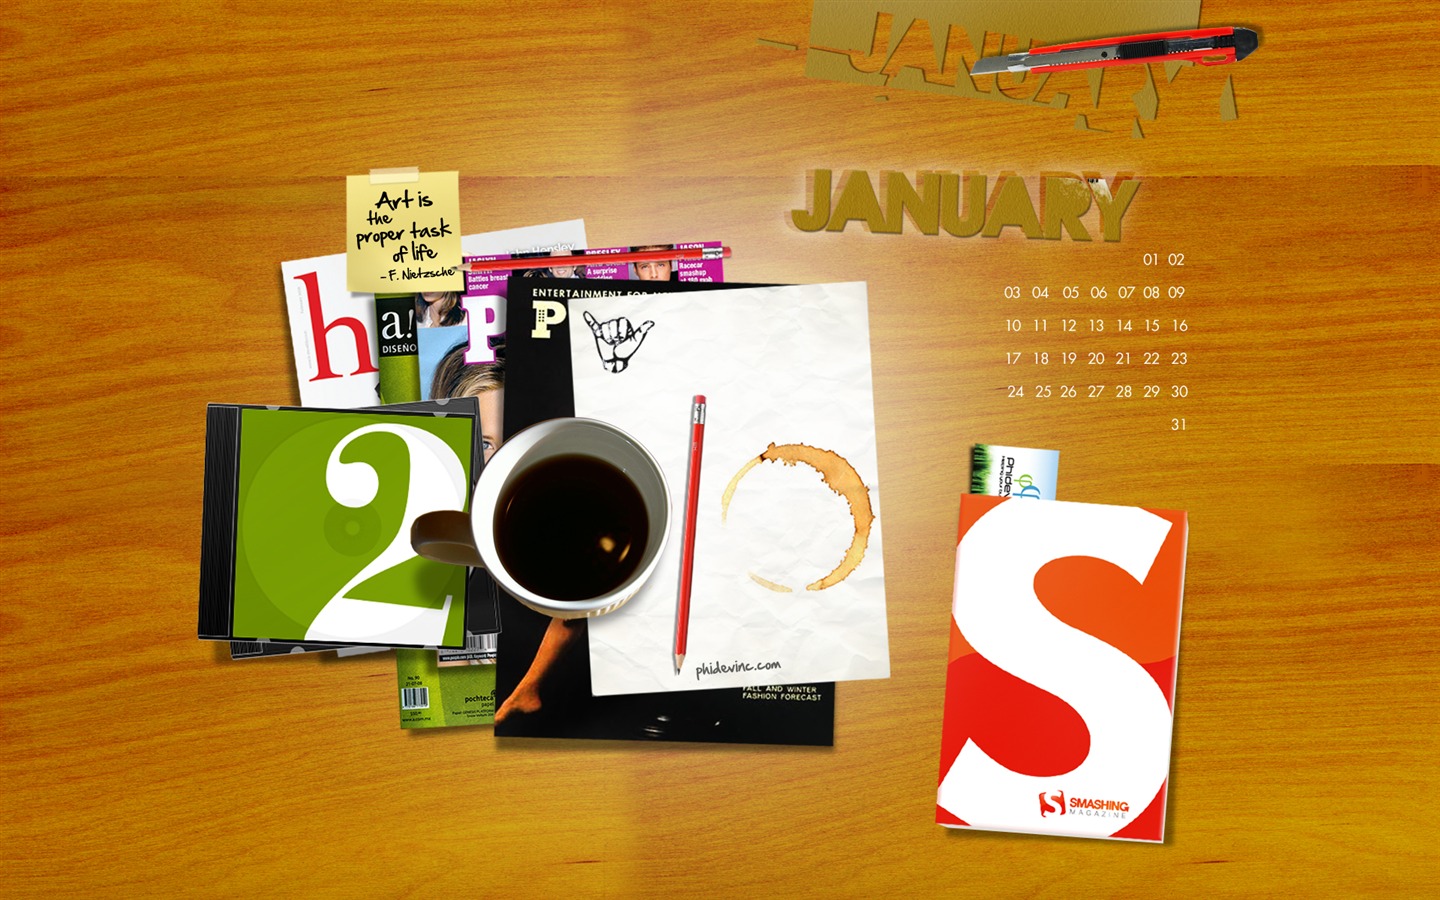 Microsoft Official Win7 Nový rok Tapety #12 - 1440x900